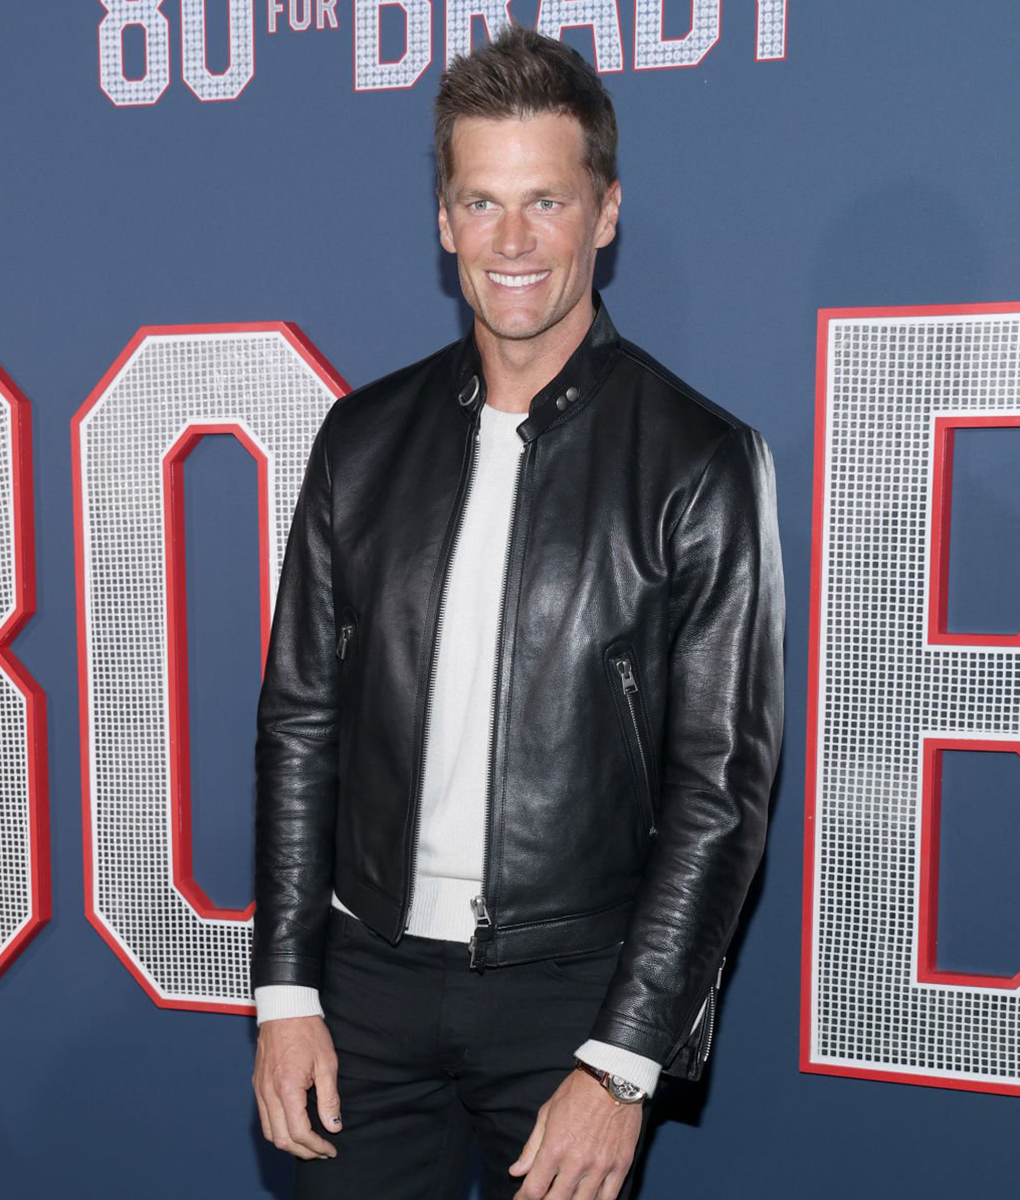 80 for Brady Premier Tom Brady Black Jacket